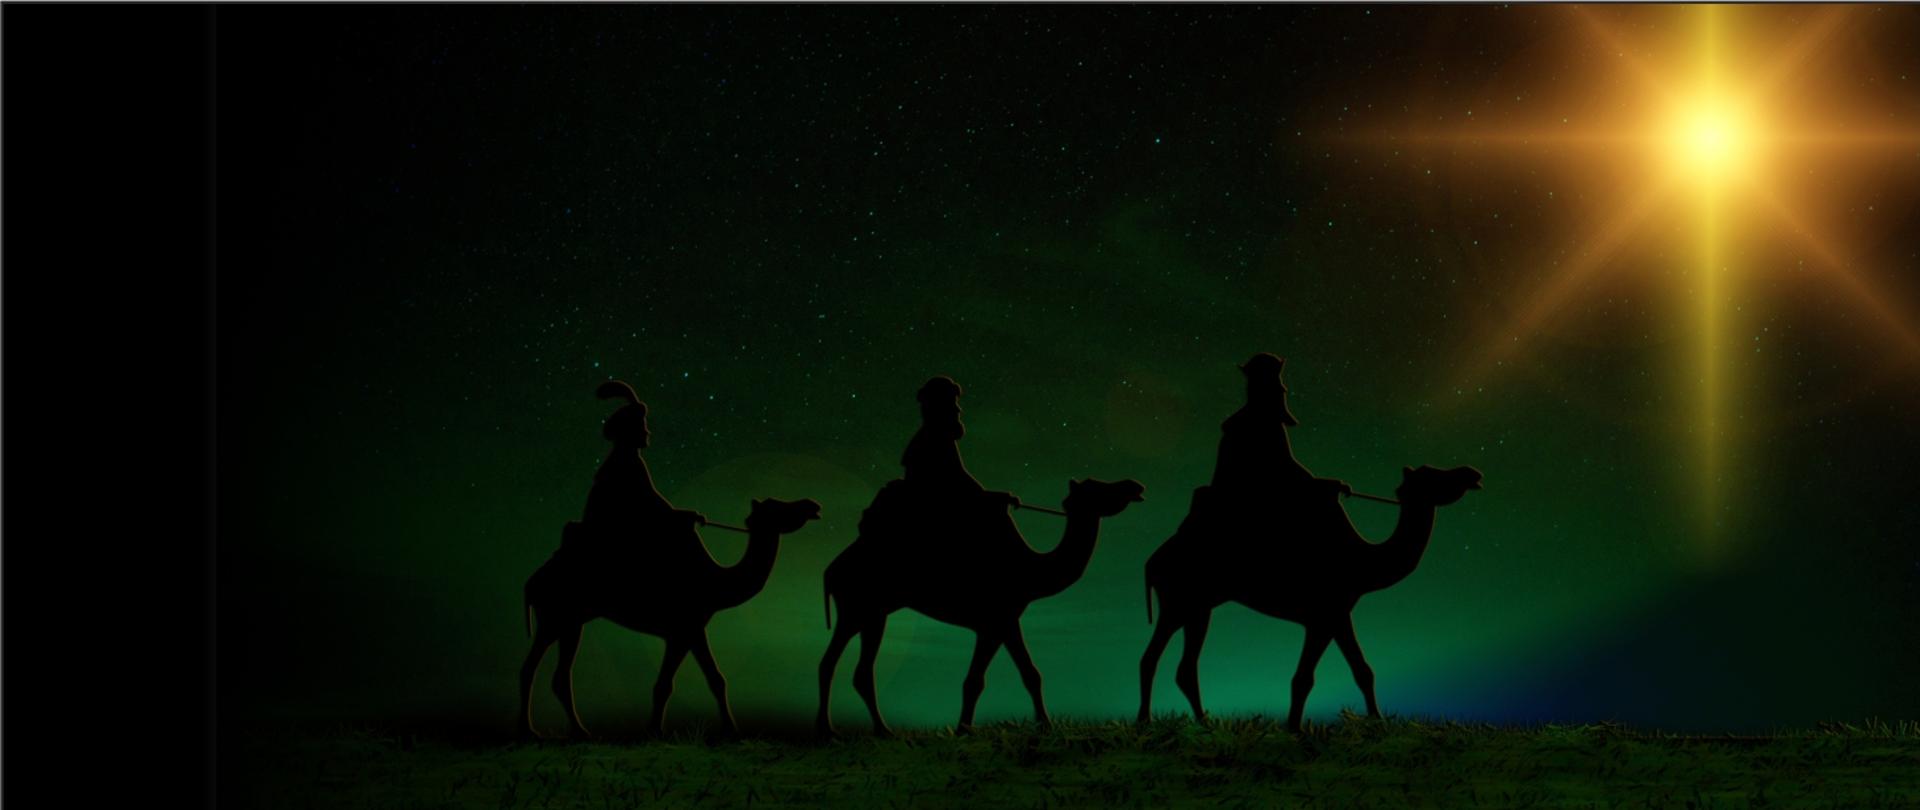 Grafika przedstawia trzech króli podążających za światłem gwiazdy